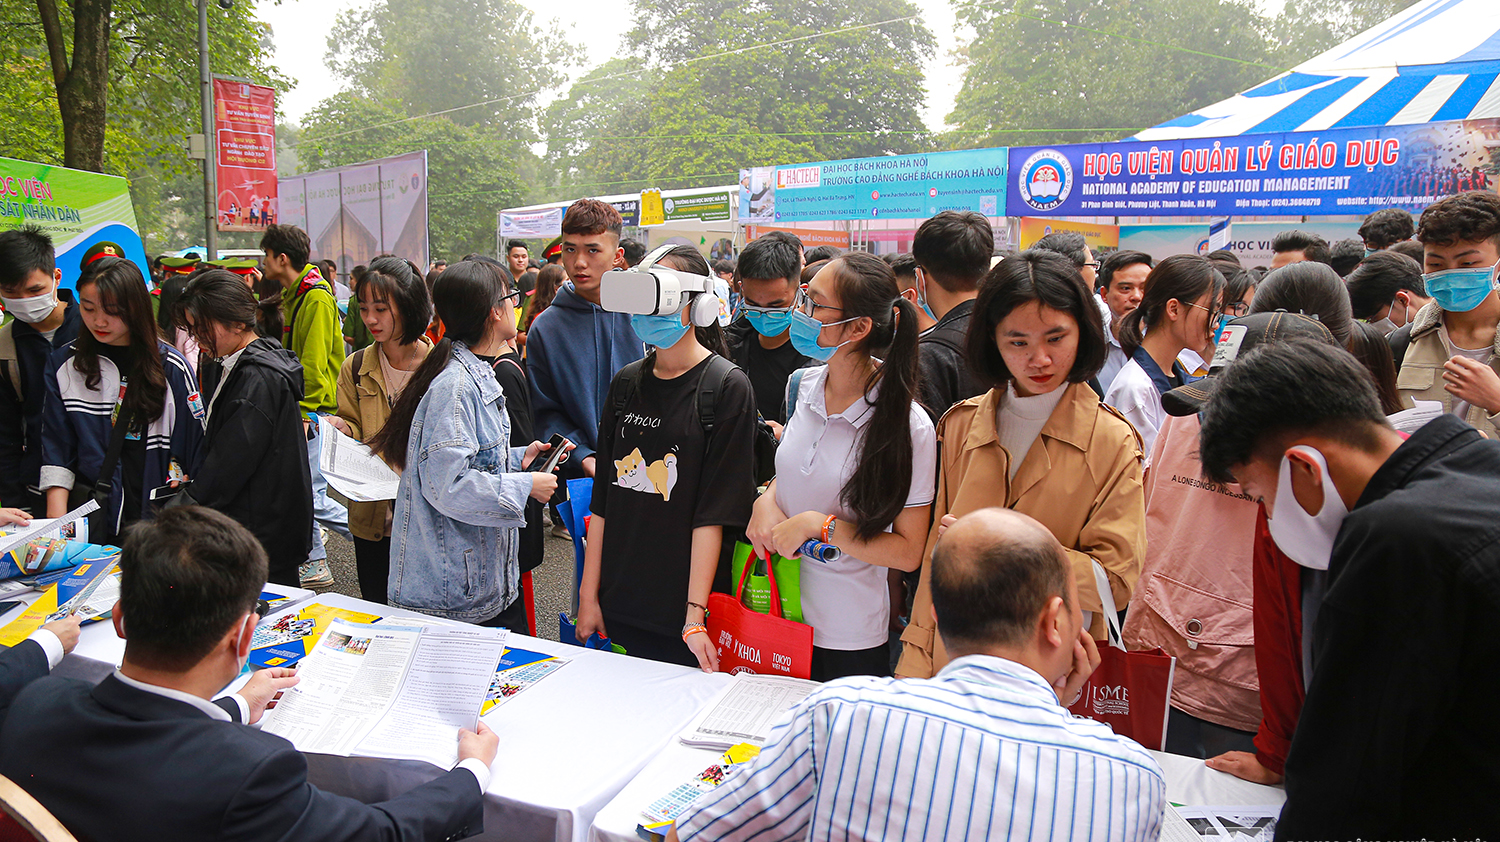 Ngày hội tư vấn tuyển sinh - hướng nghiệp 2021: Sức hút của thương hiệu Đại học Công nghiệp Hà Nội